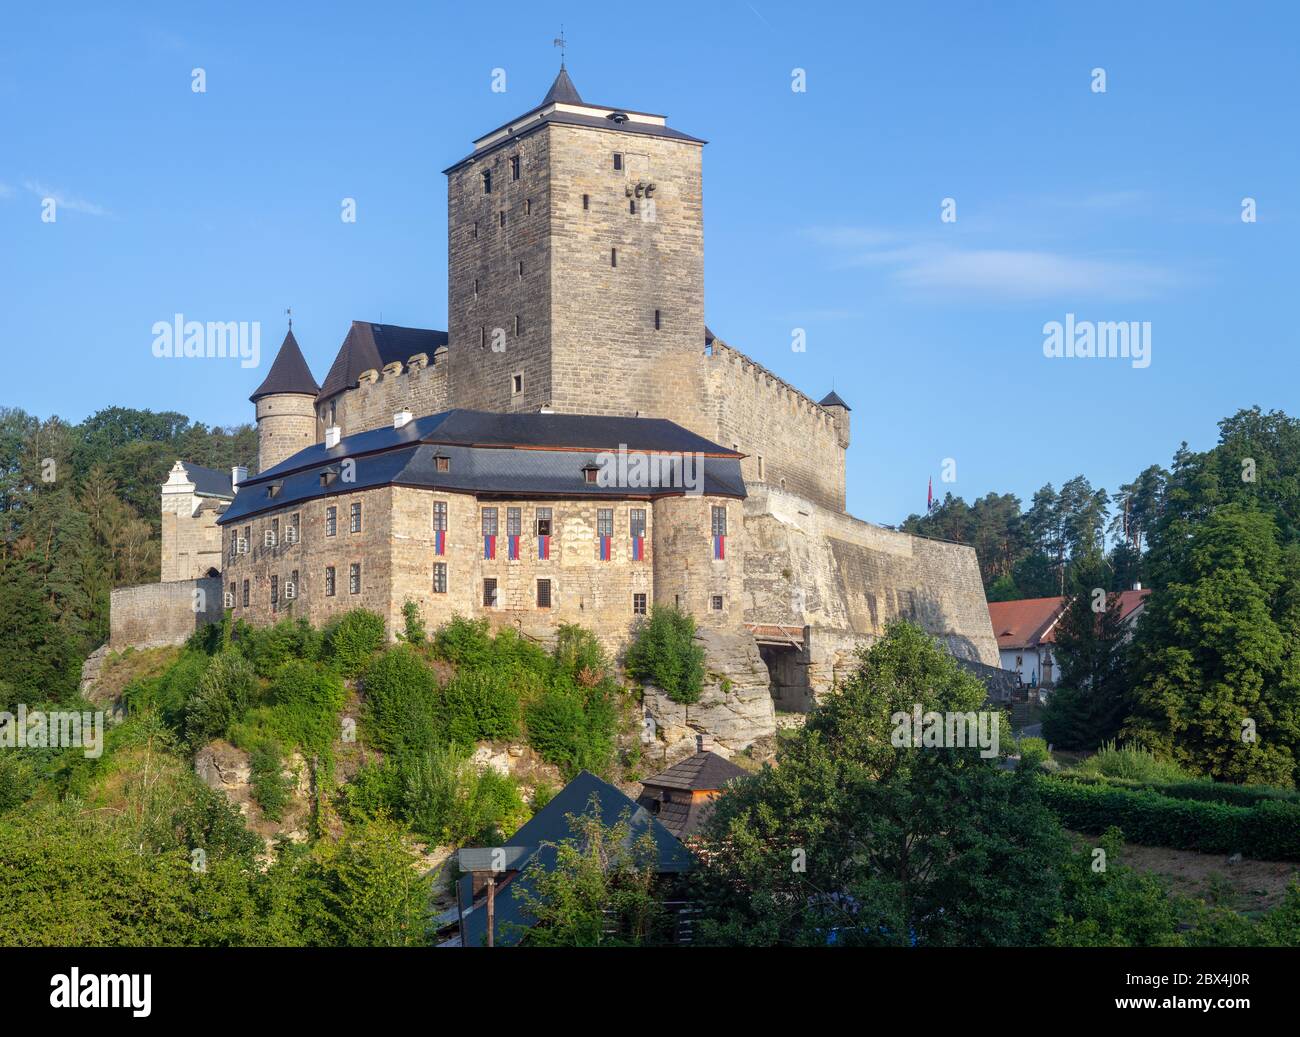 Morgenansicht der mittelalterlichen Burg Kost in der Böhmischen Paradies Region, Tschechische republik. Stockfoto